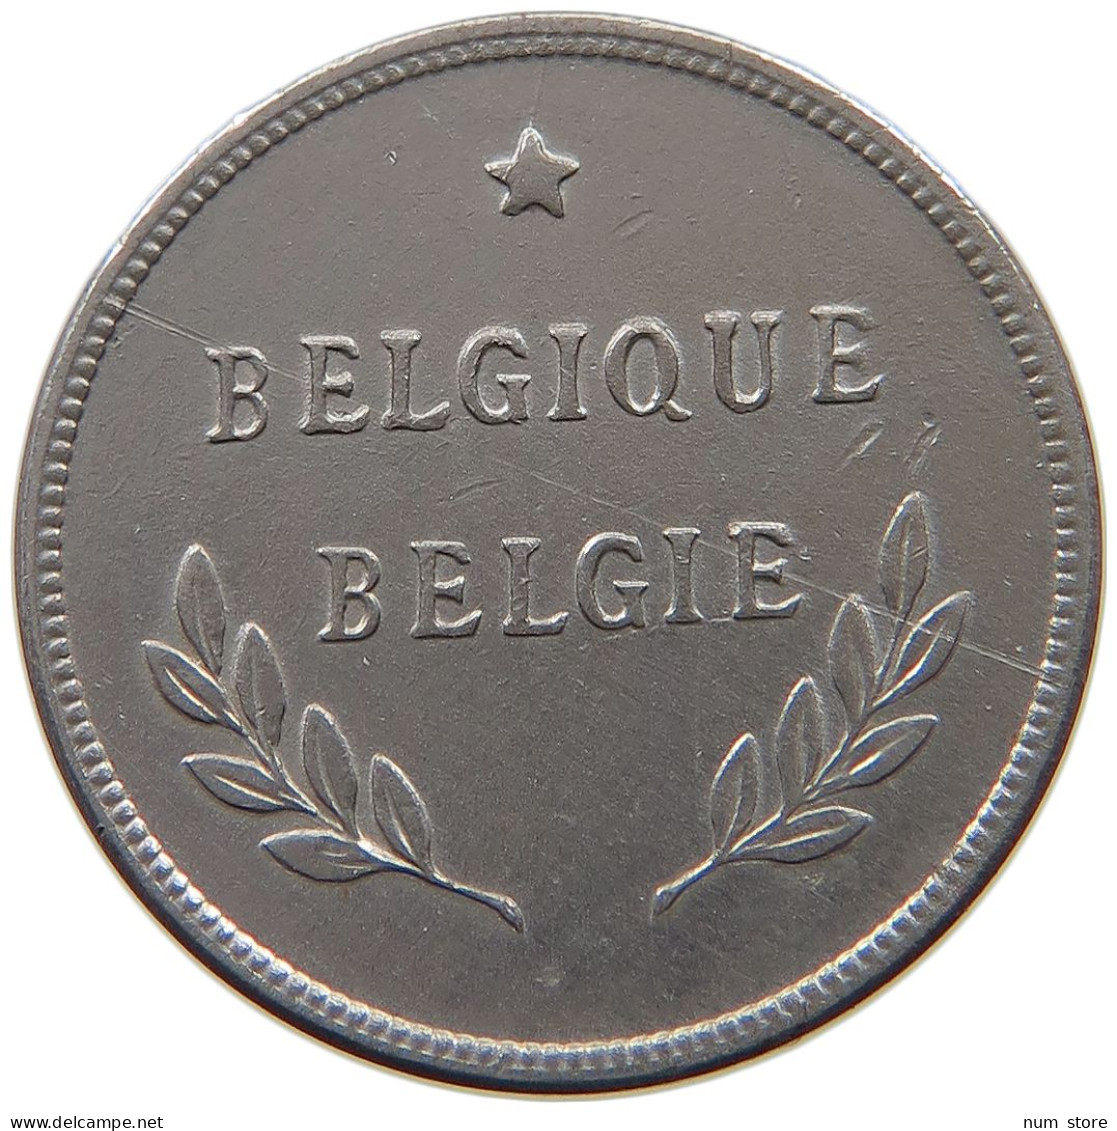 BELGIUM 2 FRANCS 1944 #a034 0891 - 2 Francs (1944 Liberazione)